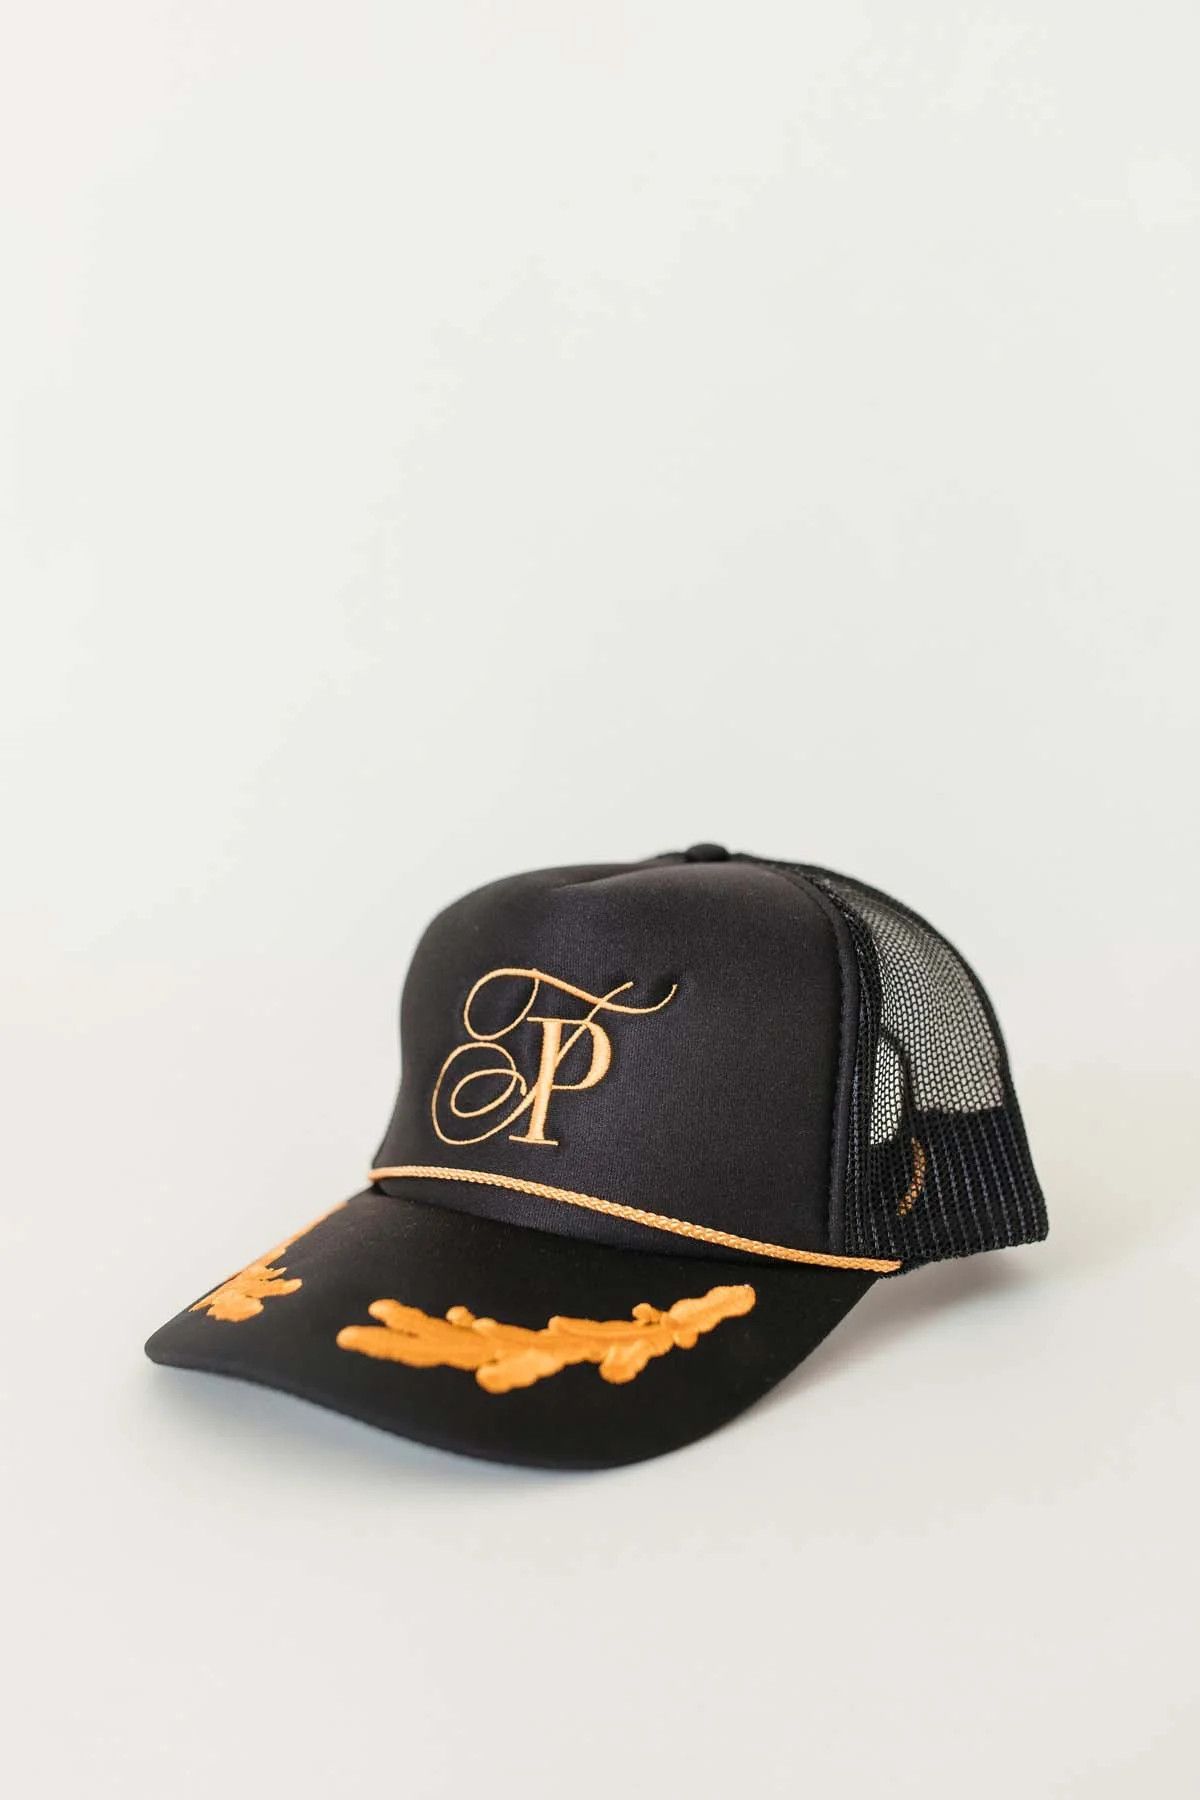 Postie Trucker Hat | The Post